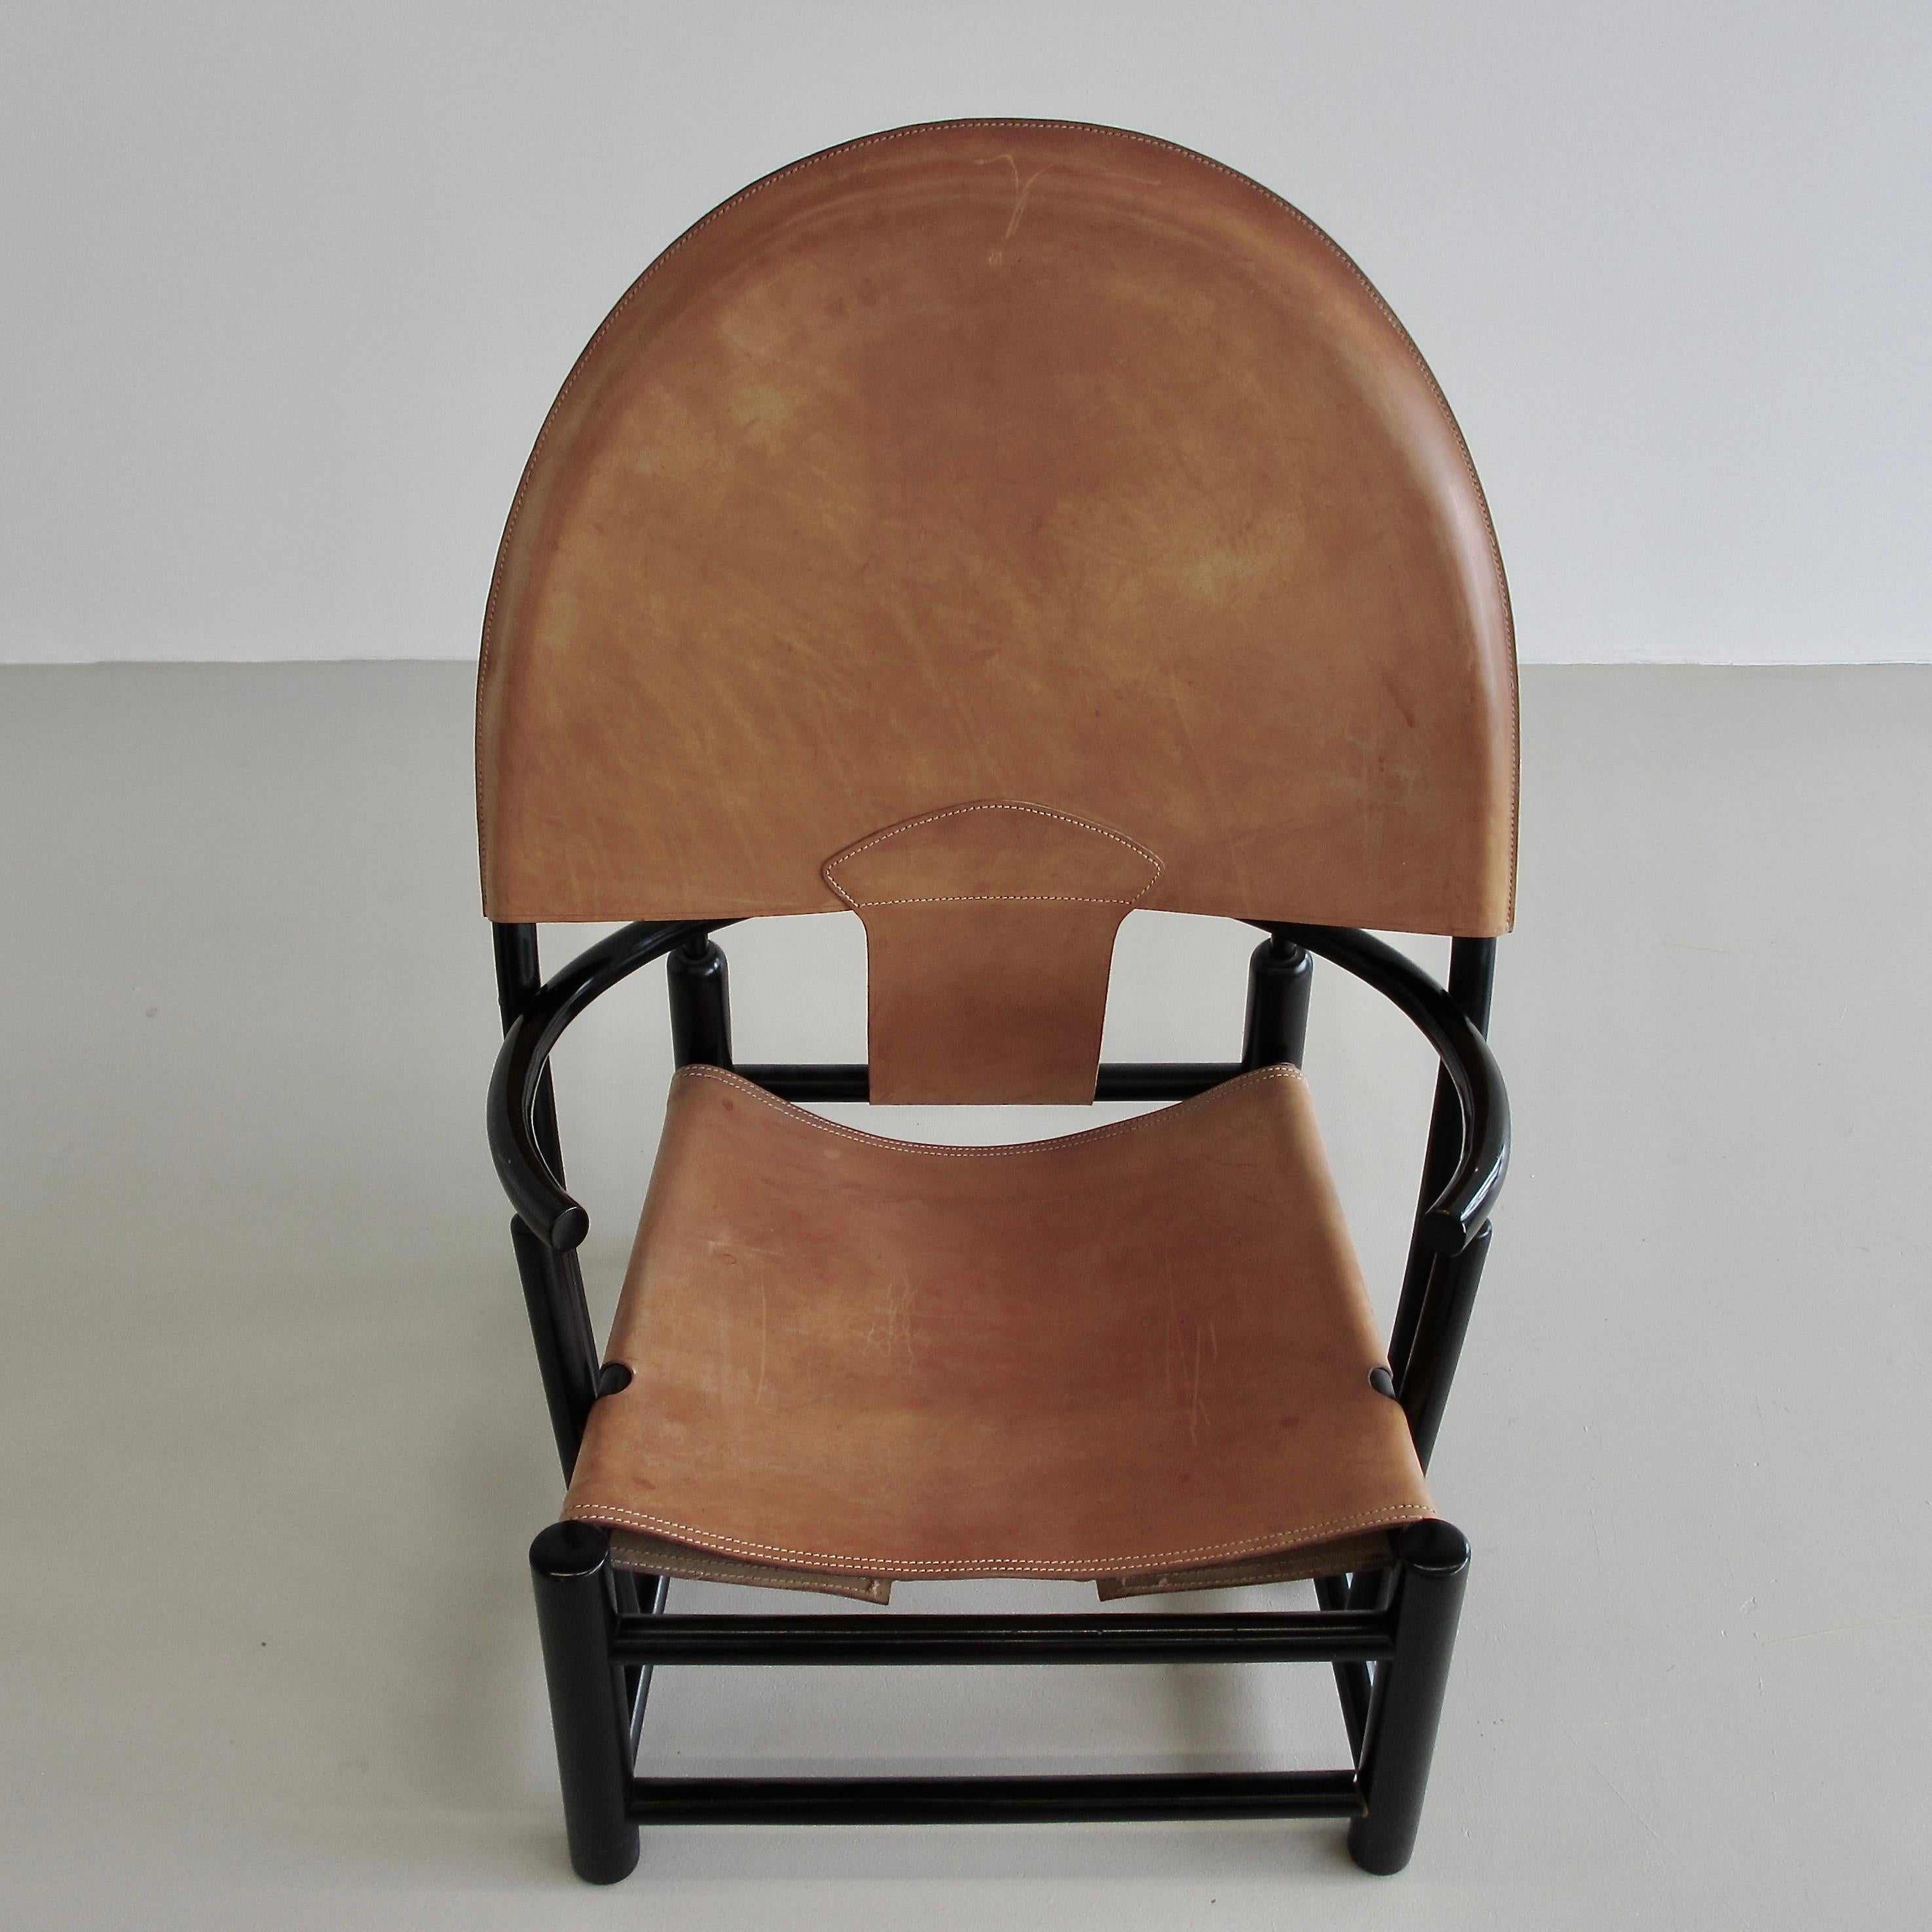 Sessel entworfen von Piero Palange und Werther Toffolon. Italien, Germa, 1972.

Schwarz lackierter Holzrahmen mit originaler Lederpolsterung. Dies ist das Modell G23. Sitzhöhe: 35 cm.